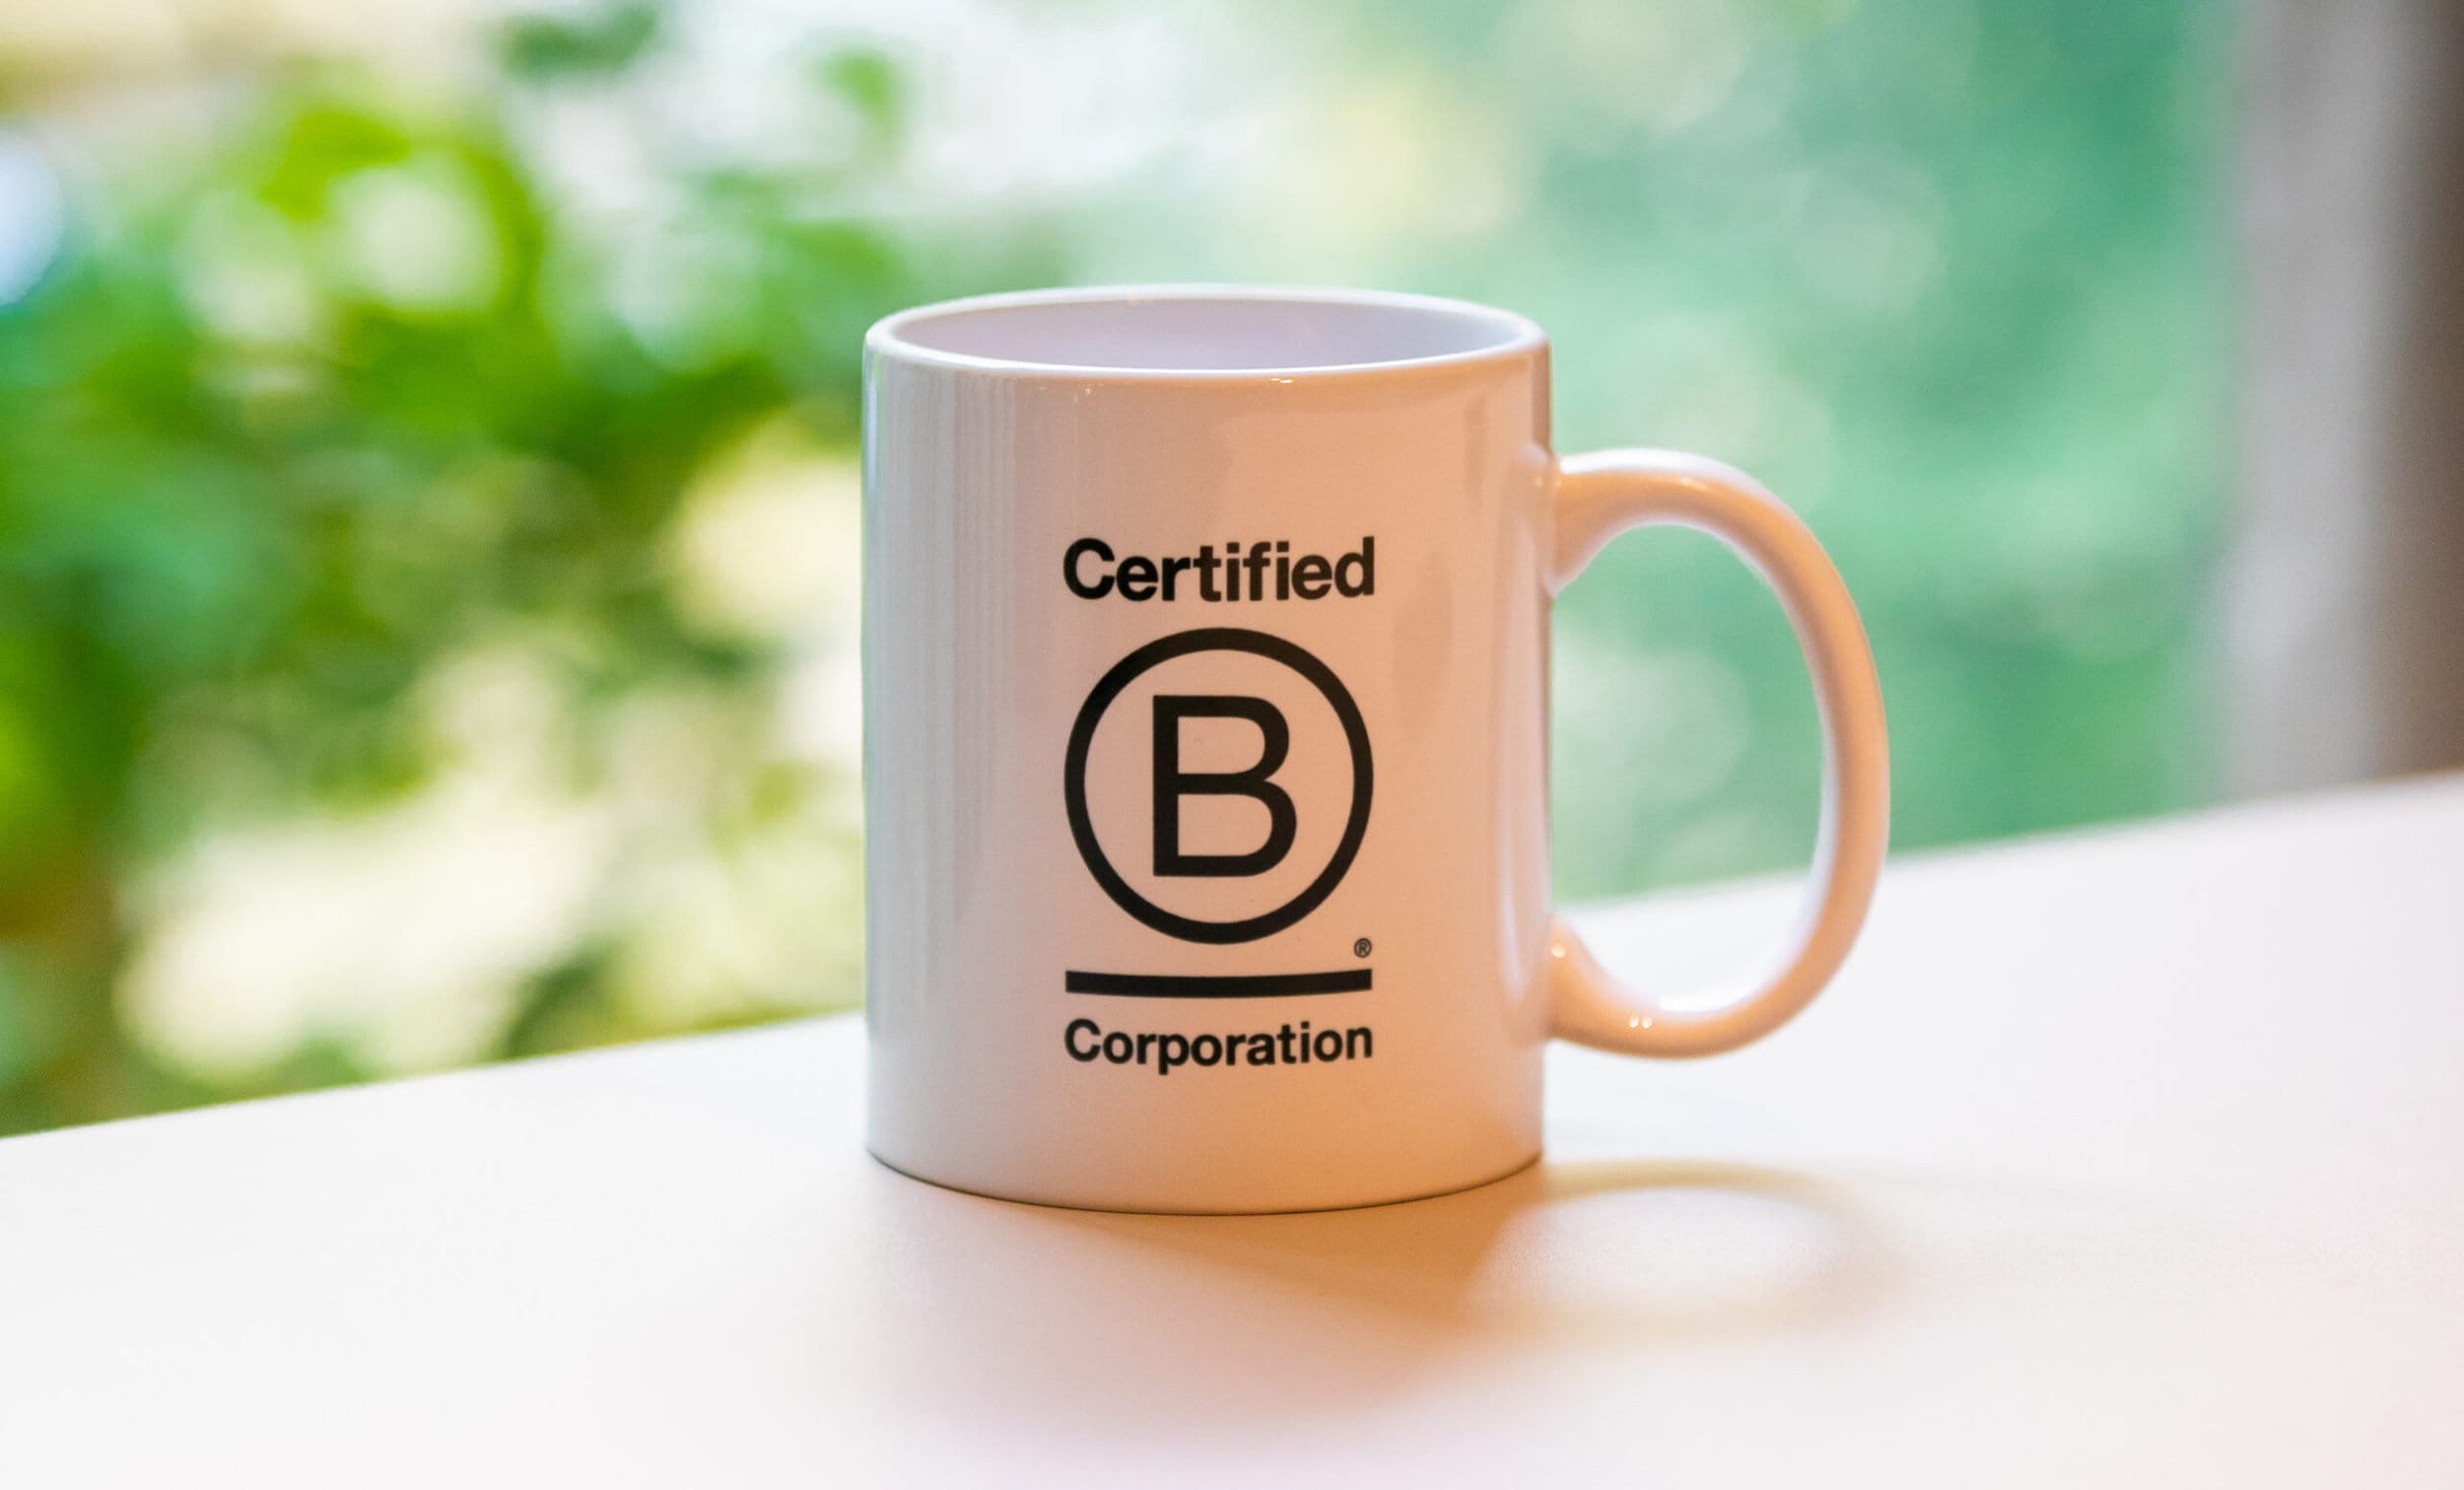 B Corp Standards